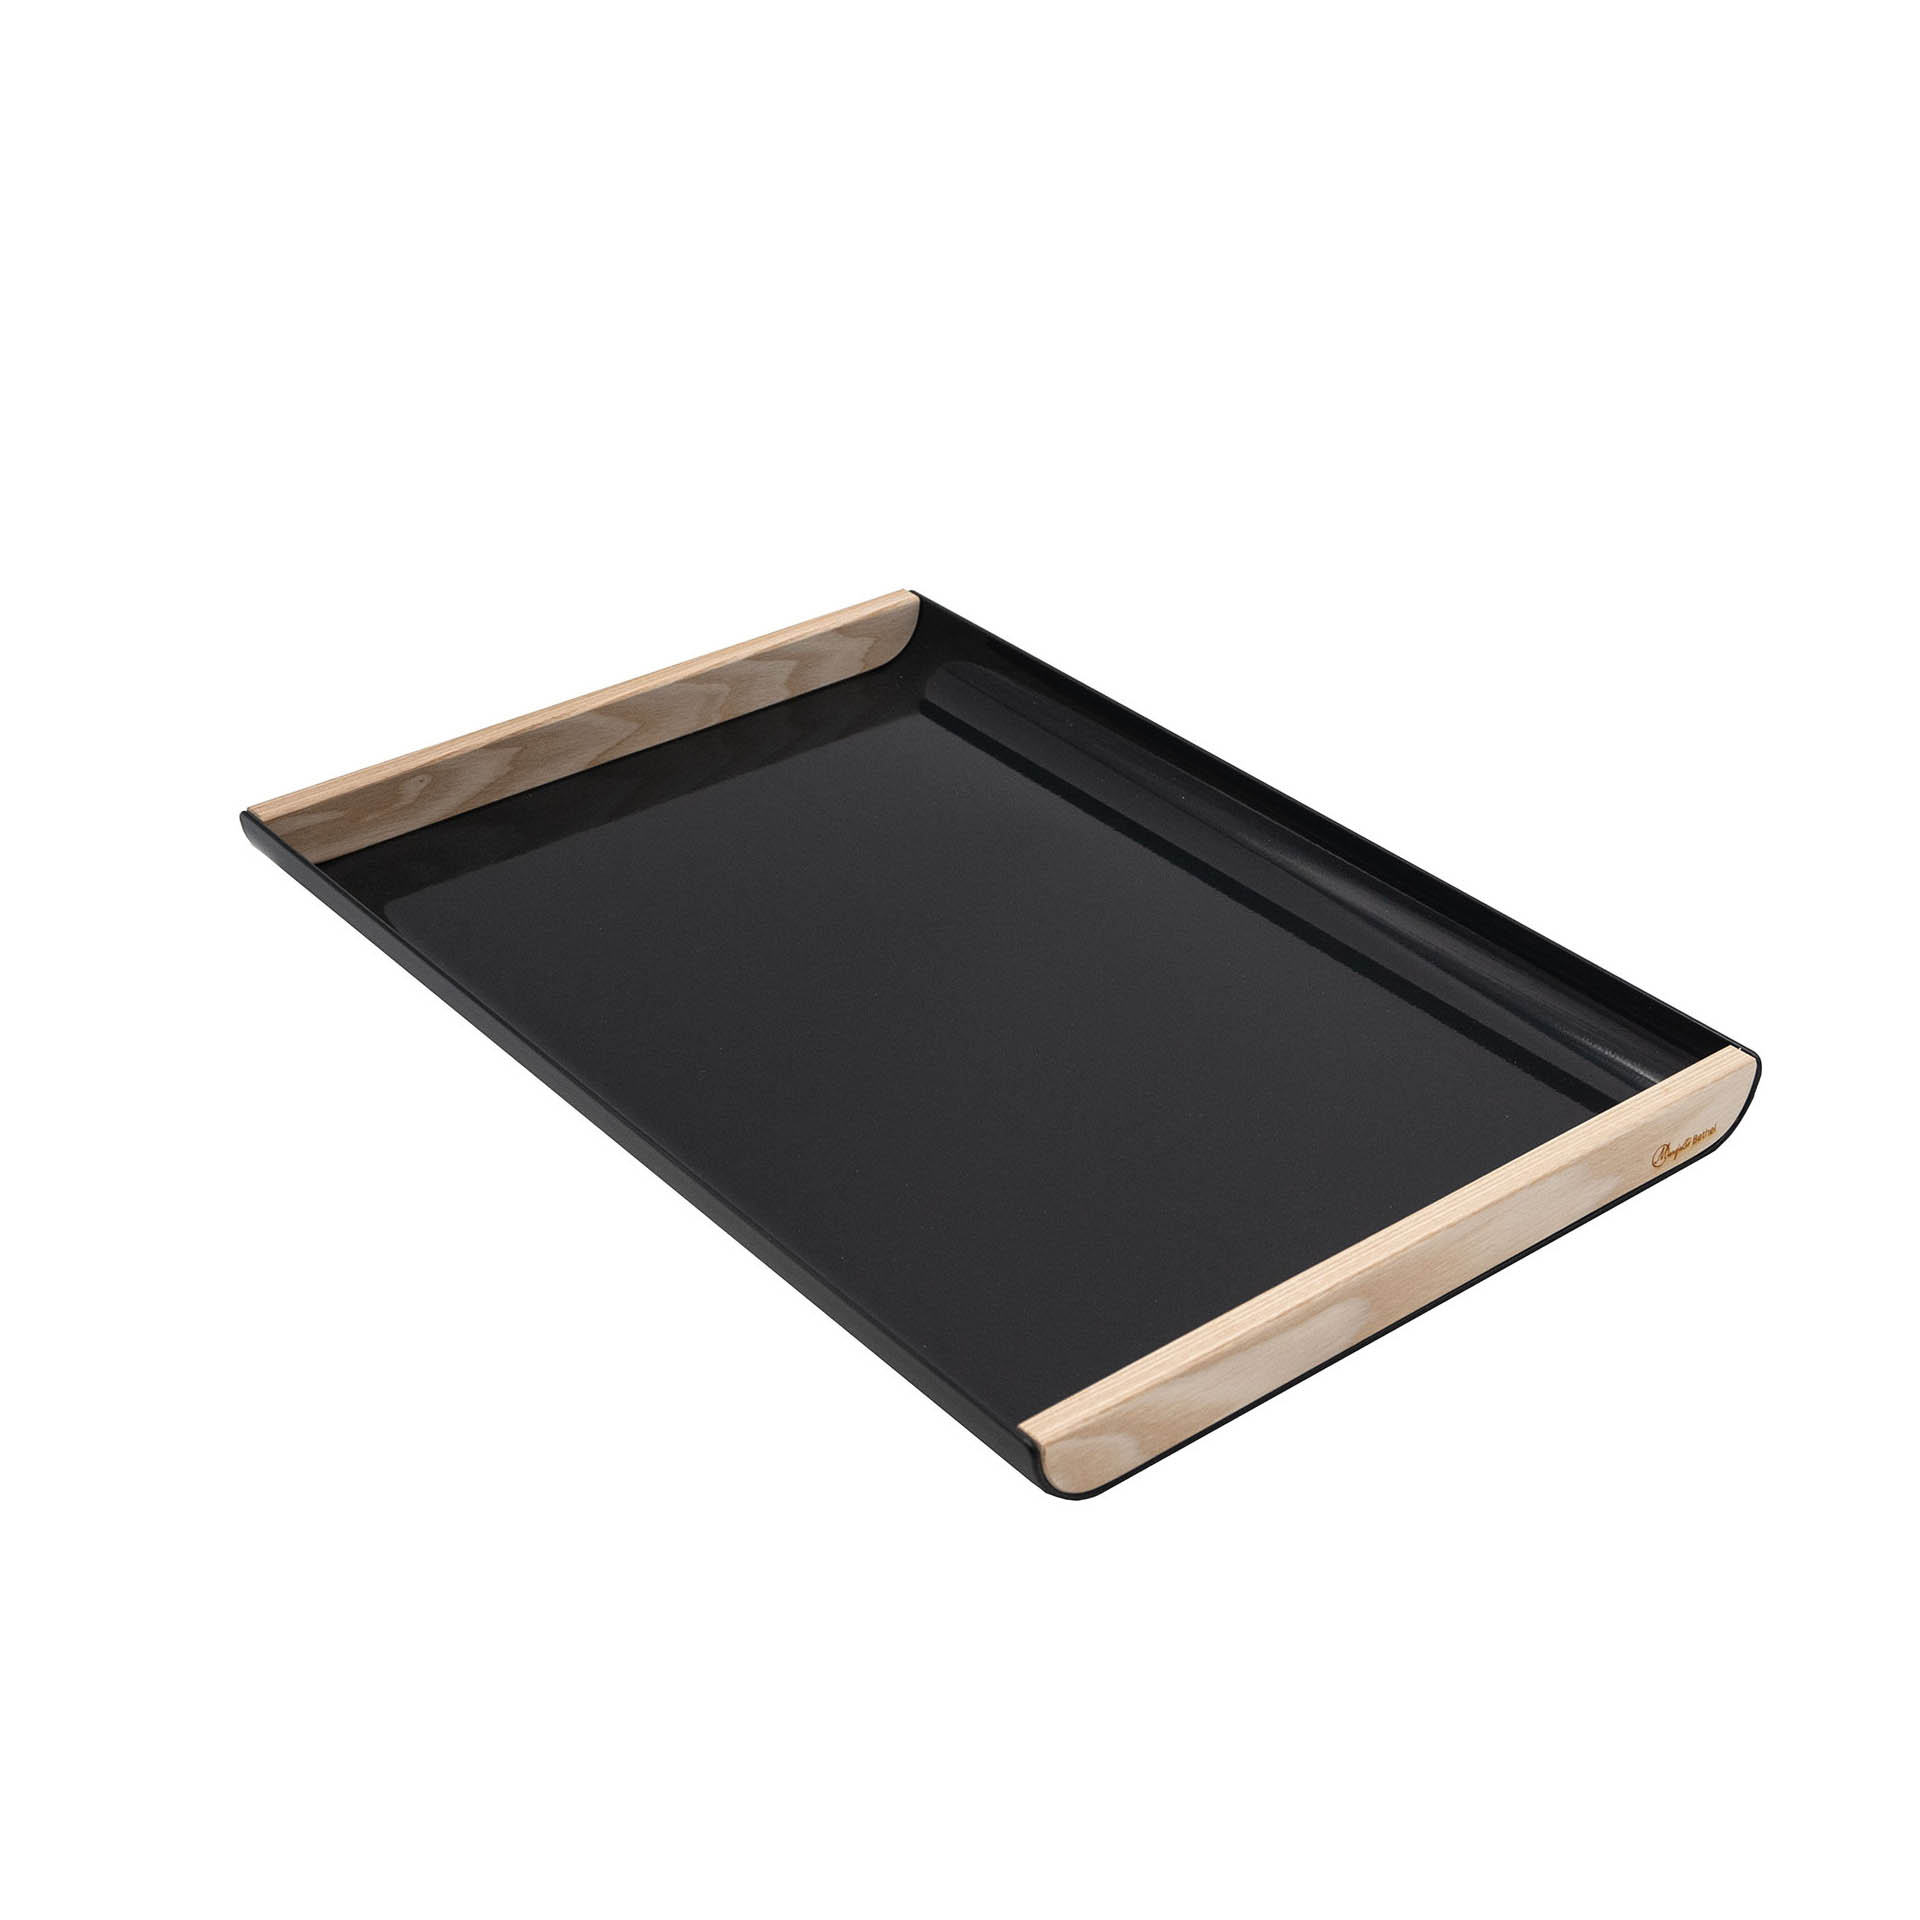 Tablett aus Holz/Metall